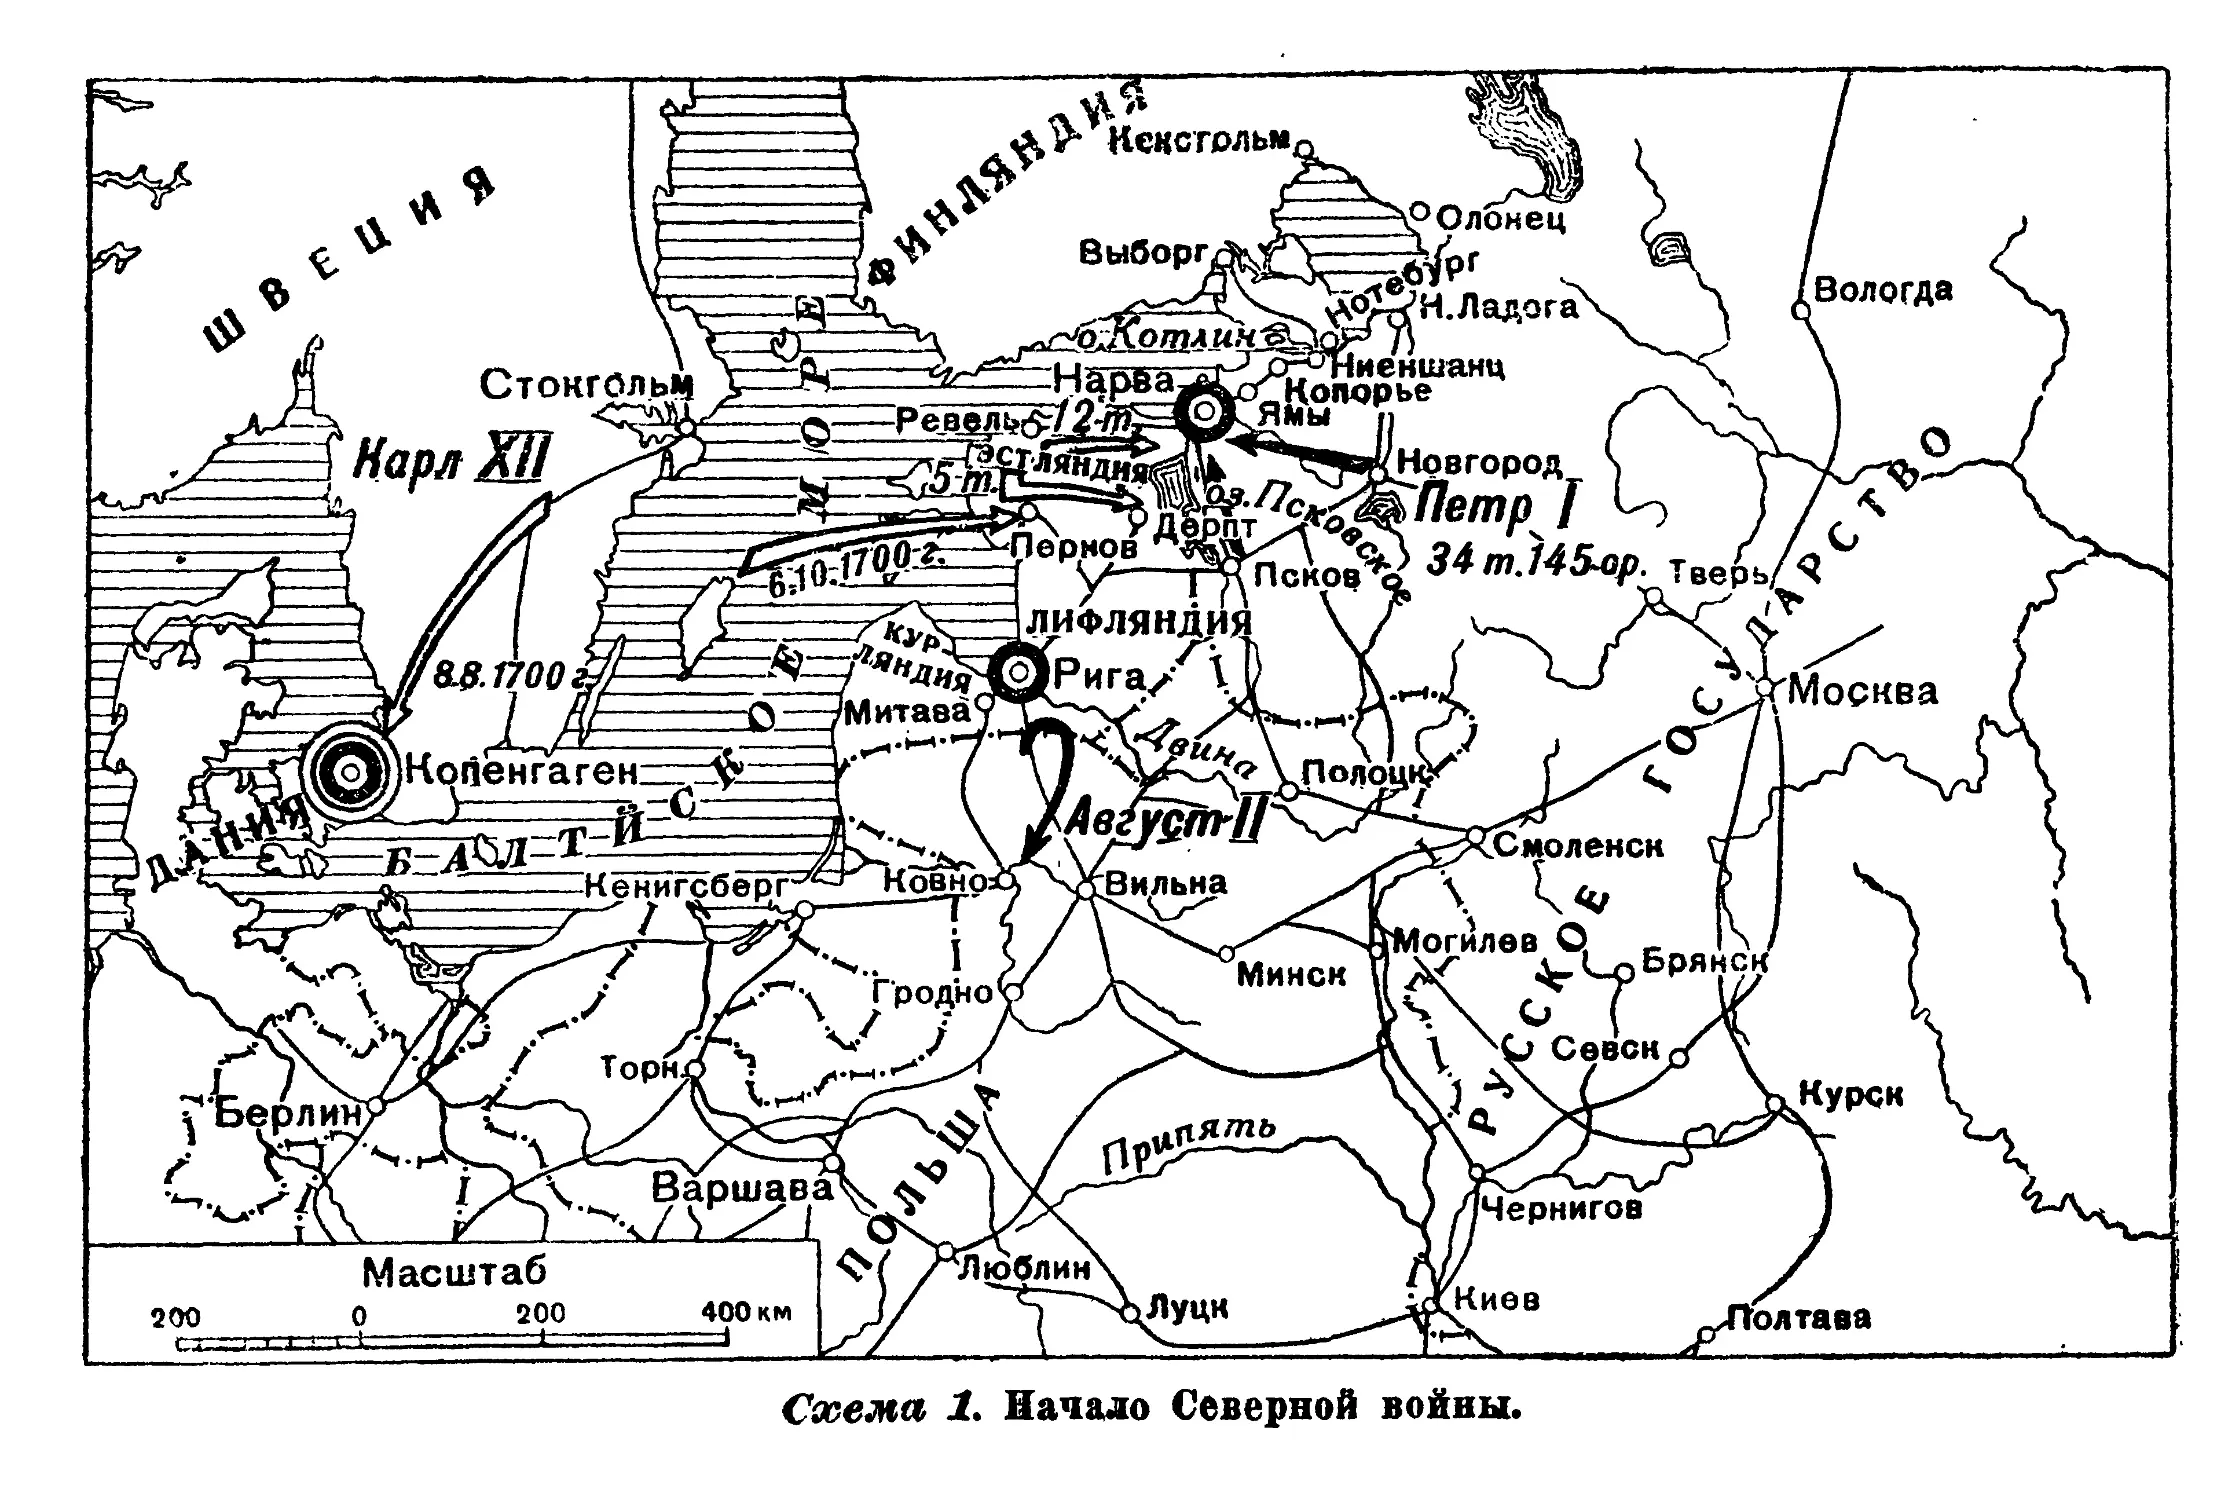 Северная война 1700-1721 карта ЕГЭ